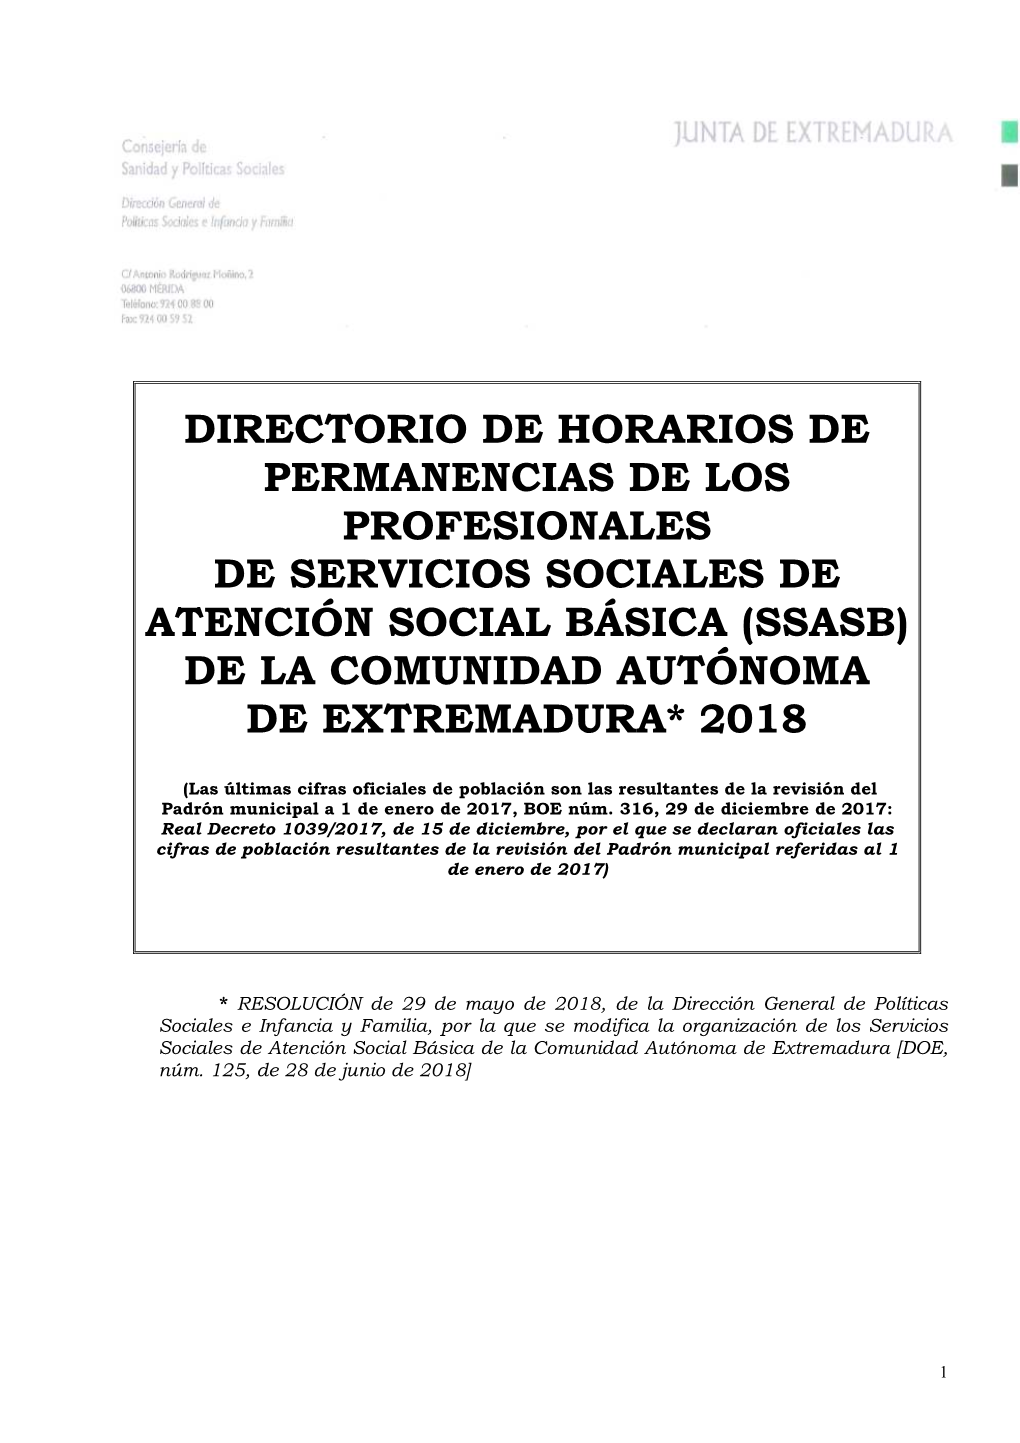 Directorio De Horarios De Permanencias De Los Profesionales De Servicios Sociales De Atención Social Básica (Ssasb) De La Comunidad Autónoma De Extremadura* 2018